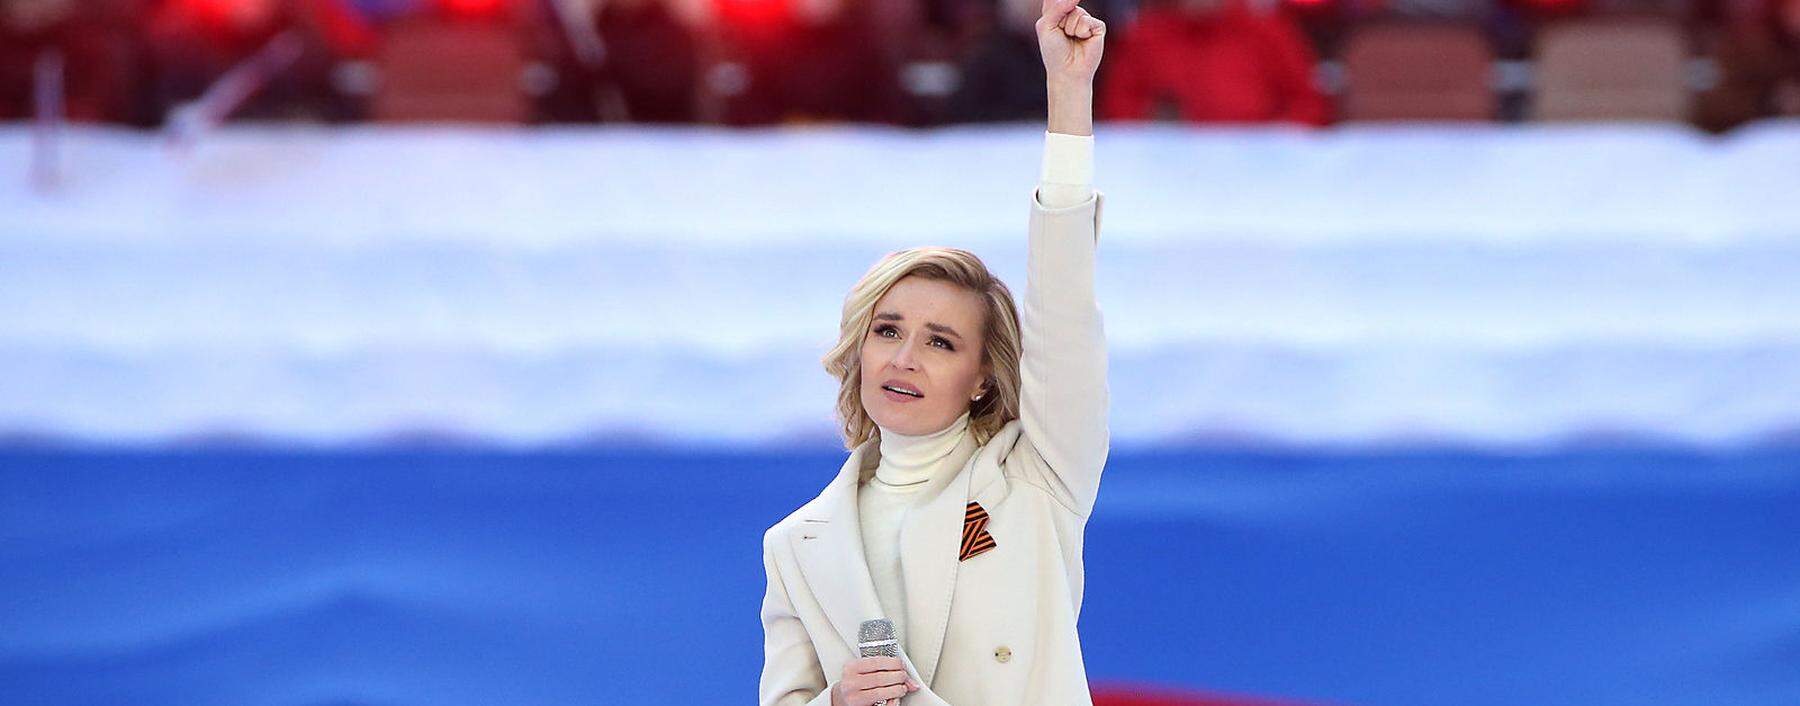 Schönstes Gesicht der Pro-Putin-Starfraktion ist die 35-jährige Popsängerin Polina Gagarina, 2015 Zweite beim Eurovision Song Contest. Hier beim Moskauer Konzert mit Putin am 18. März.